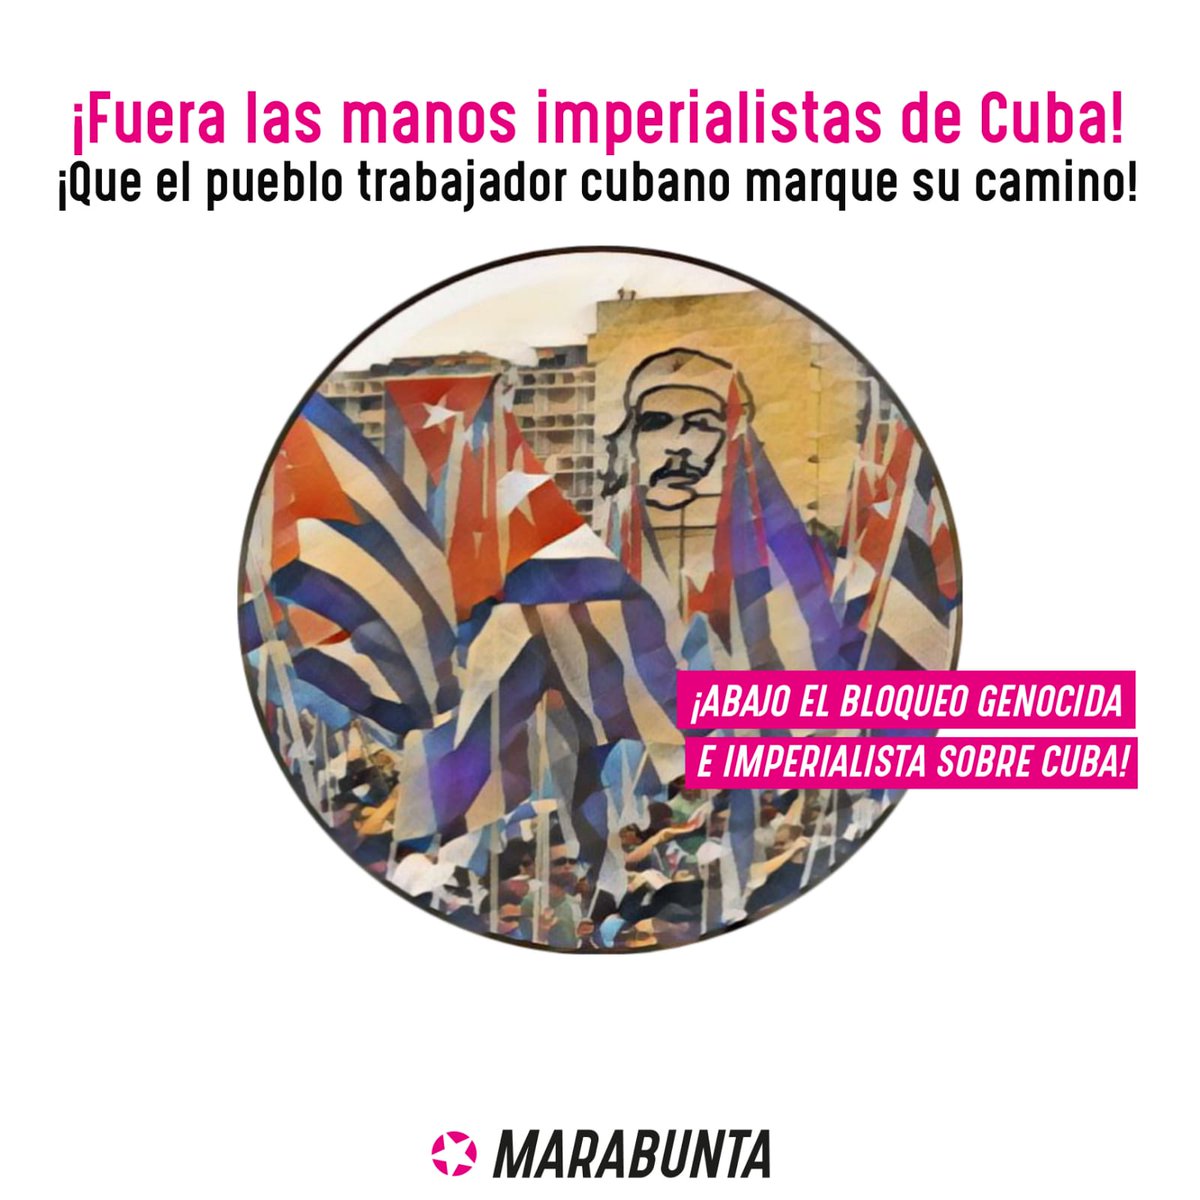 🇨🇺 FUERA LAS MANOS IMPERIALISTAS DE CUBA 🇨🇺

¡Que el pueblo trabajador cubano marque su camino!

Te invitamos a leer nuestro posicionamiento y nuestra solidaridad con el pueblo cubano 👇🏽

corrientemarabunta.org/.../fuera-las-…

#Cuba #AbajoElBloqueo #CubaLibreDeBloqueo #CubaSoberana